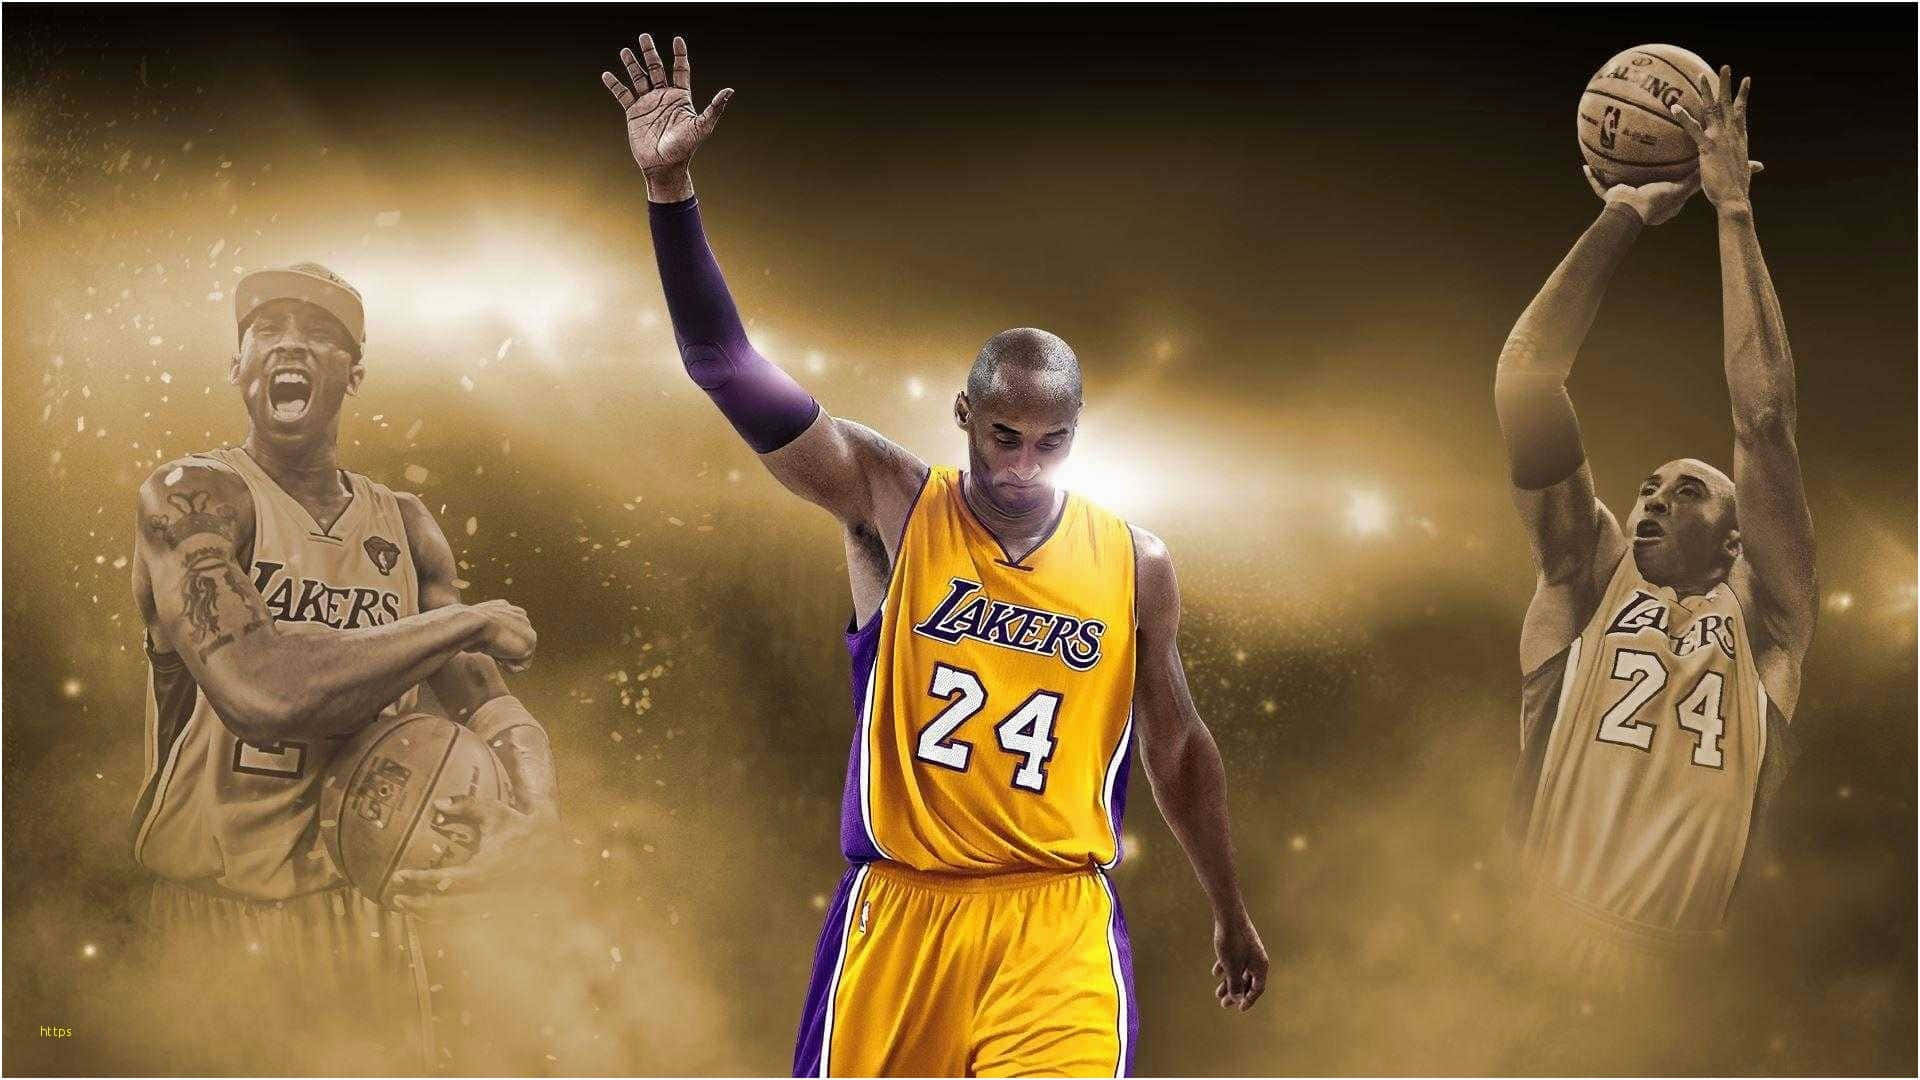 Michael Jordan, Kobe Bryant or Lebron James?  Kobe bryant wallpaper,  Basketball wallpaper, Basketball players